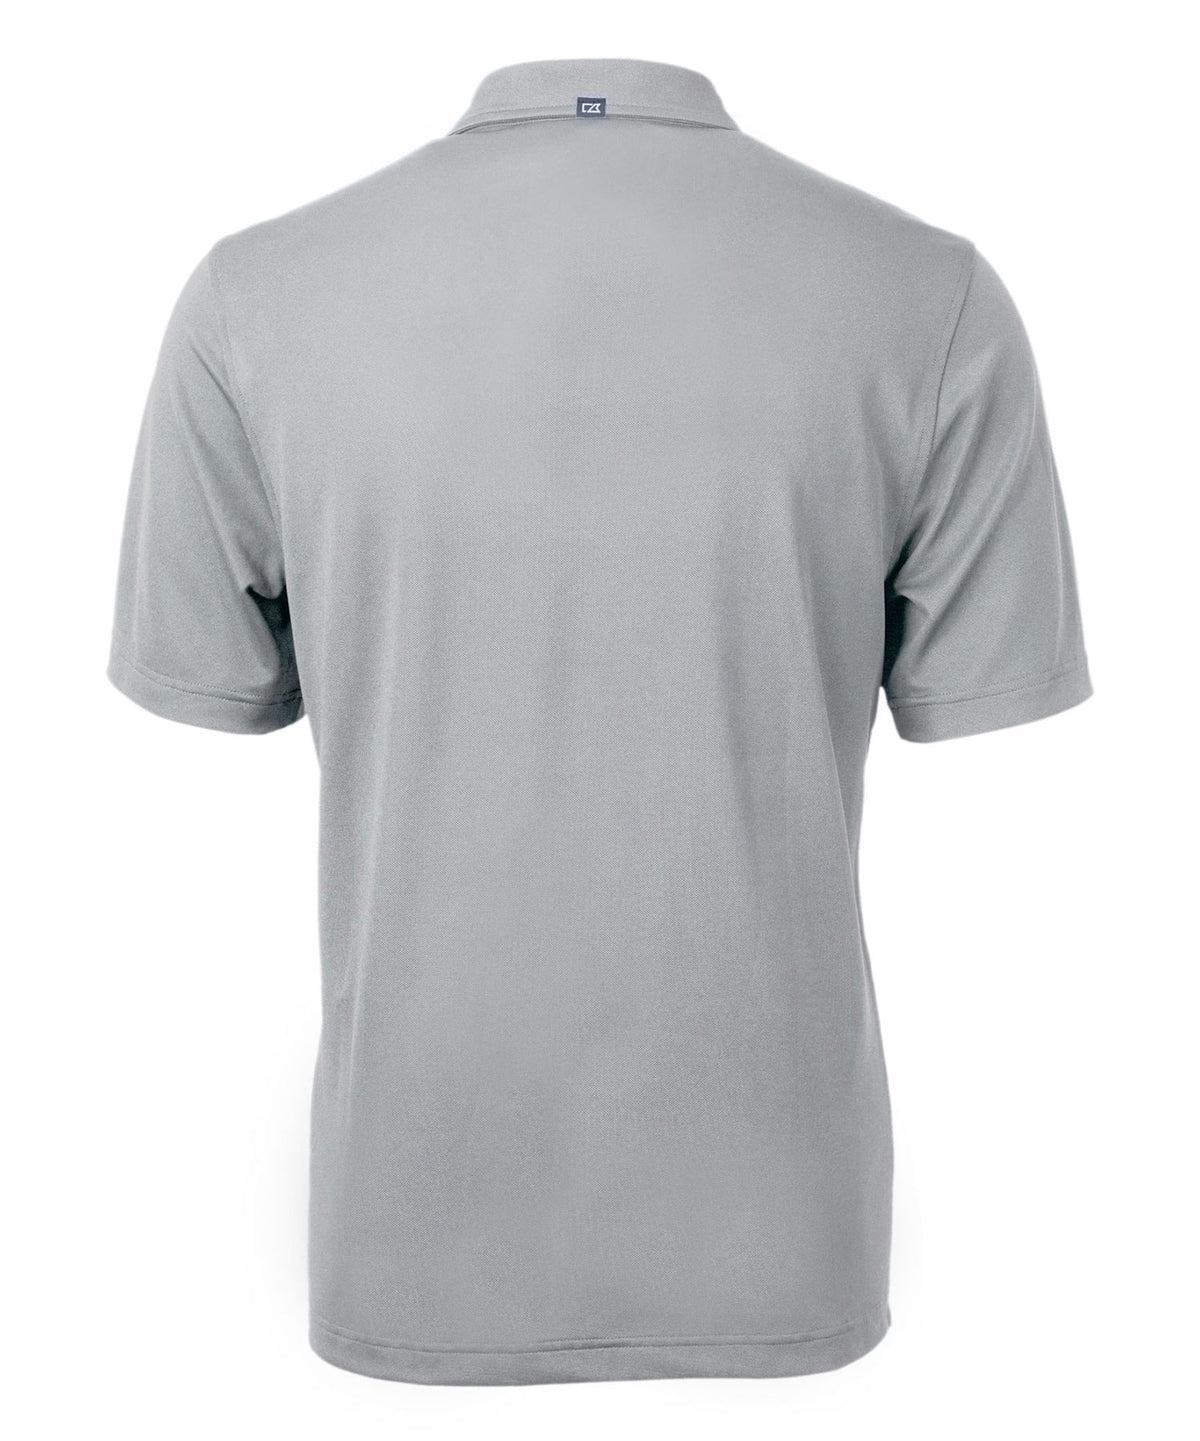 Cutter & Buck Tennessee Titans Short Sleeve Polo Knit Shirt, Men's Big & Tall